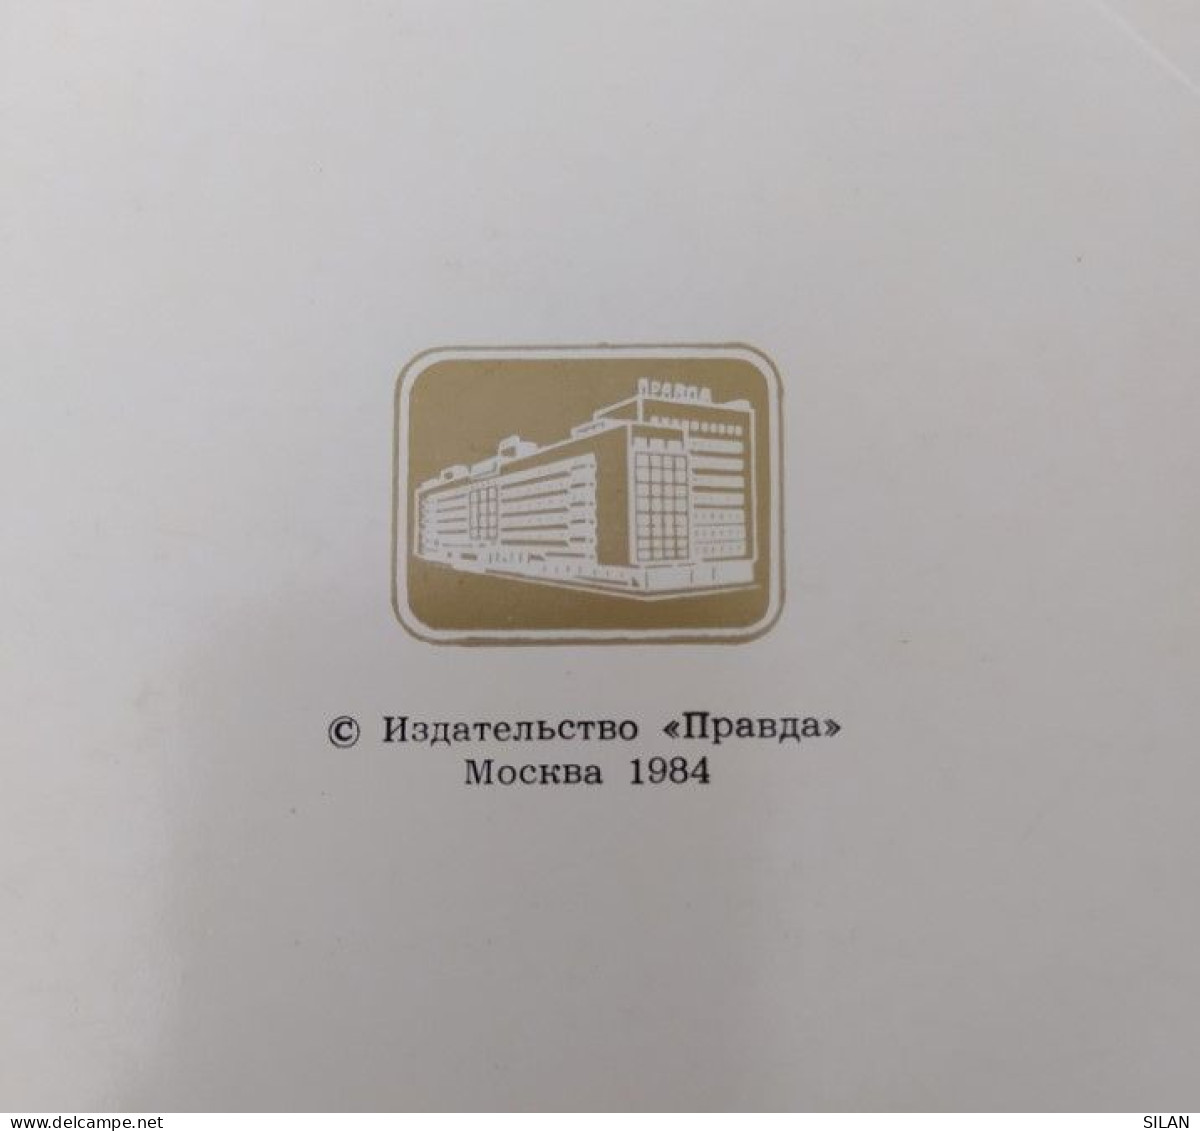 Carpeta Con 12 Postales Museo Hermitage Rusia 1984 - Rusia